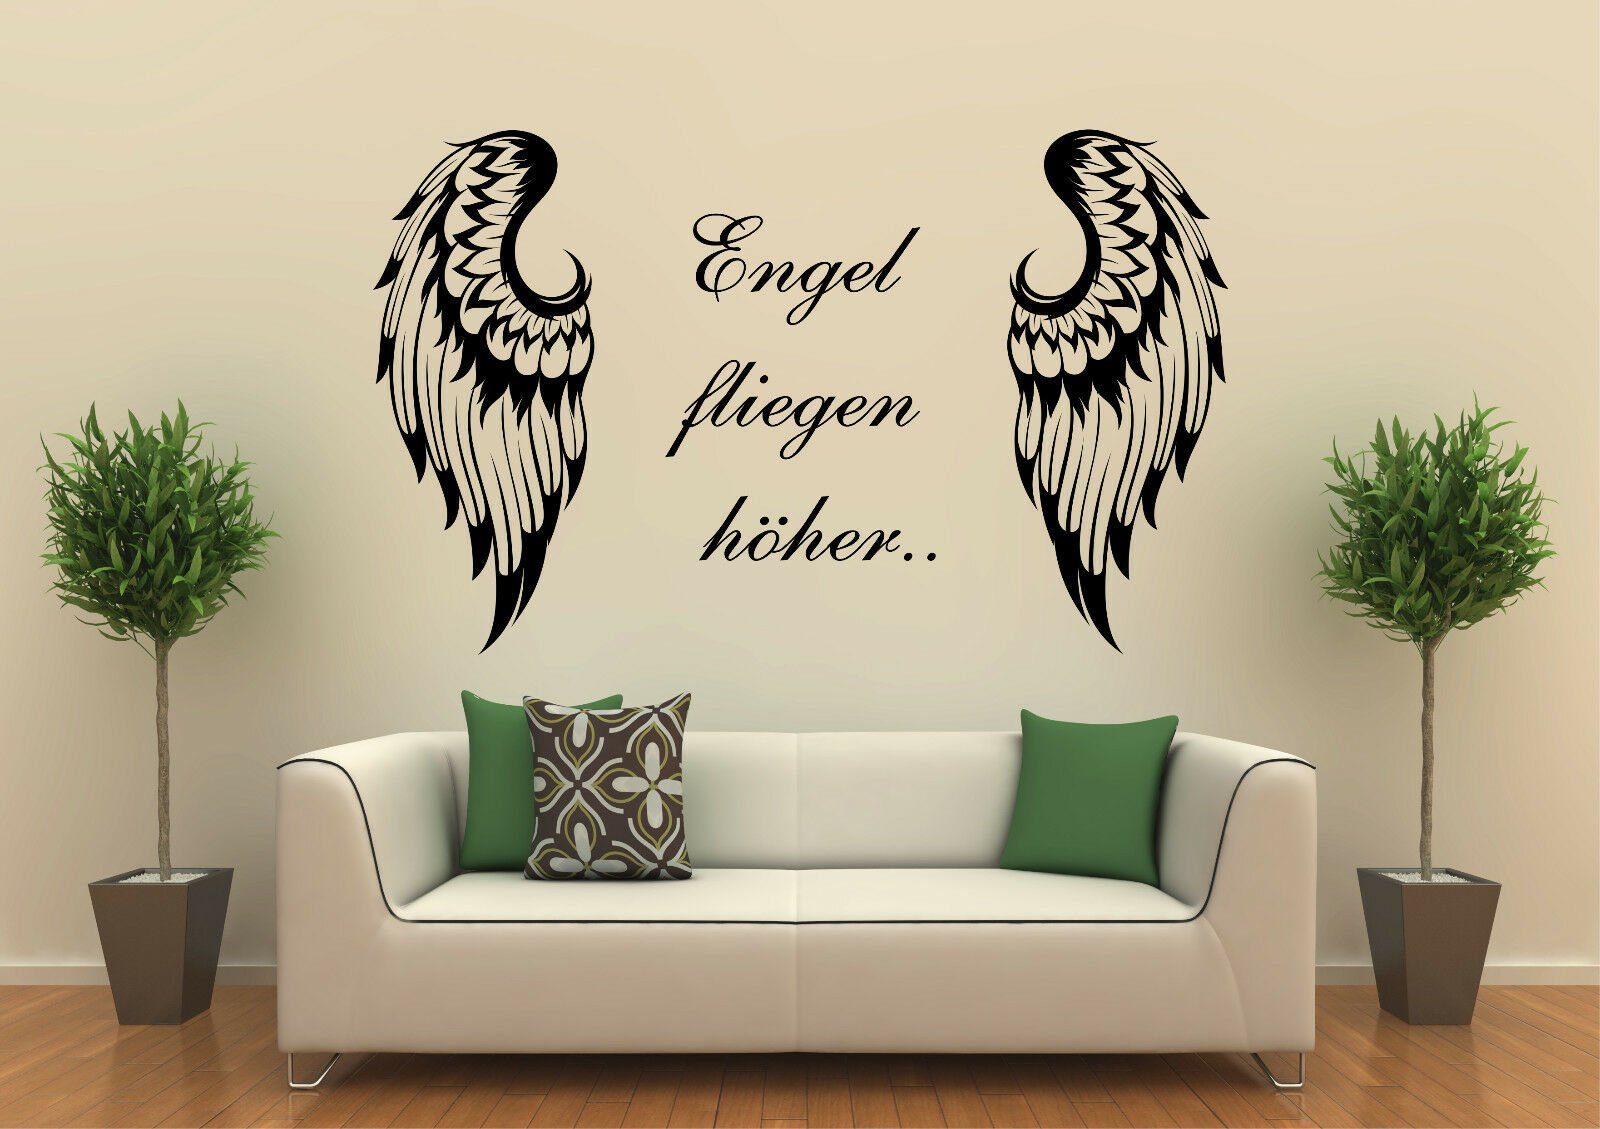 St), mit Spruch: Wandtattoo Engel ohne (1 höher... Flügel Selbstklebend, fliegen Hintergrundfolie Wandtattoodesign